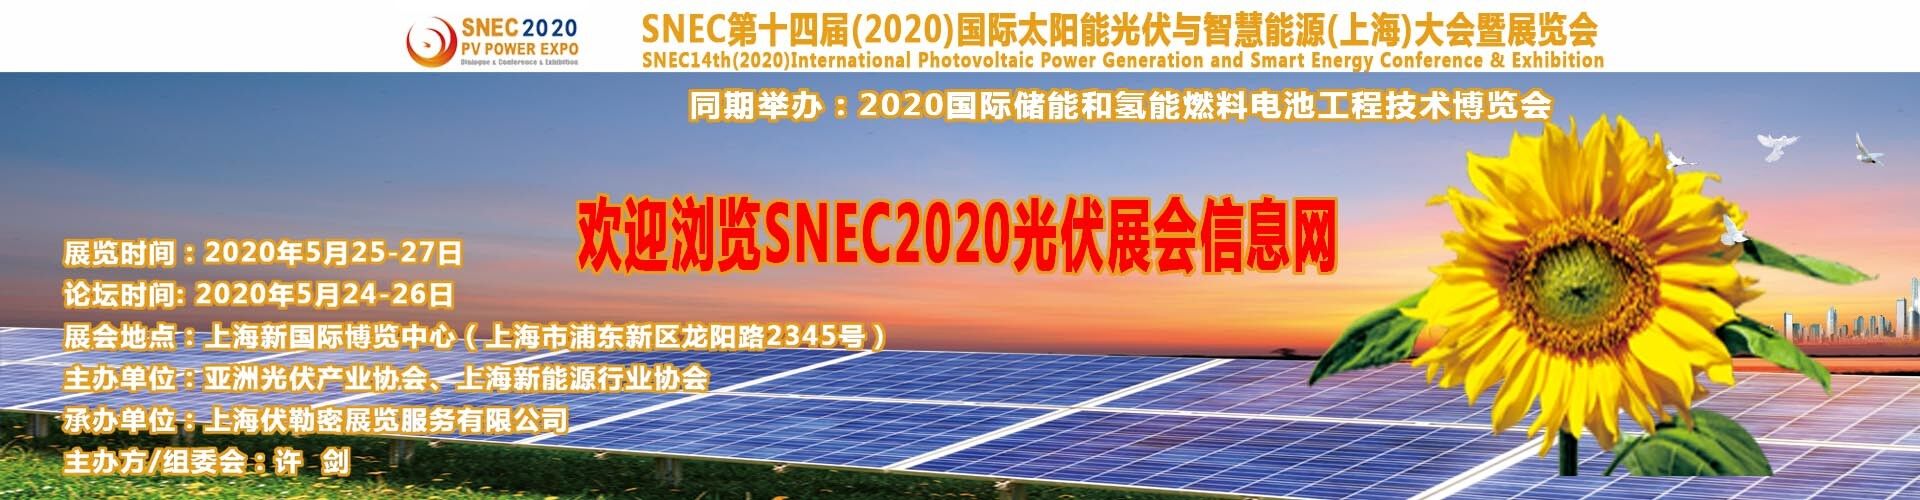 上海太陽能展會/觀眾人次